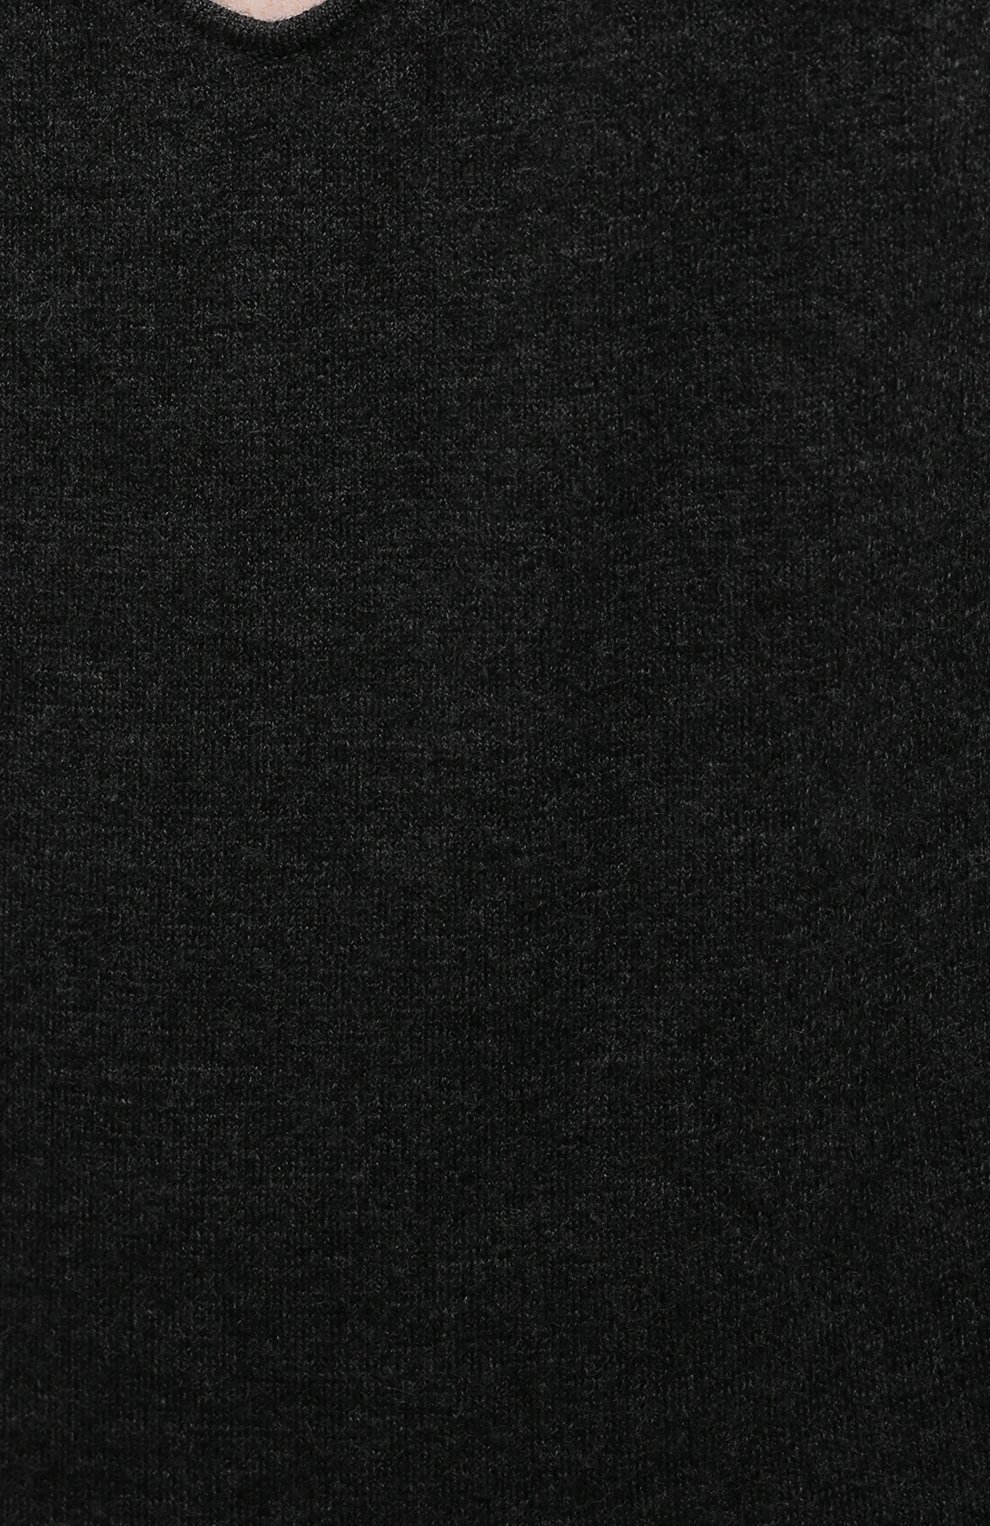 Женское кашемировое боди BOTTEGA VENETA темно-серого цвета, арт. 664312/VKSE0 | Фото 5 (Материал внешний: Шерсть, Кашемир; Стили: Гламурный; Женское Кросс-КТ: Боди-одежда)